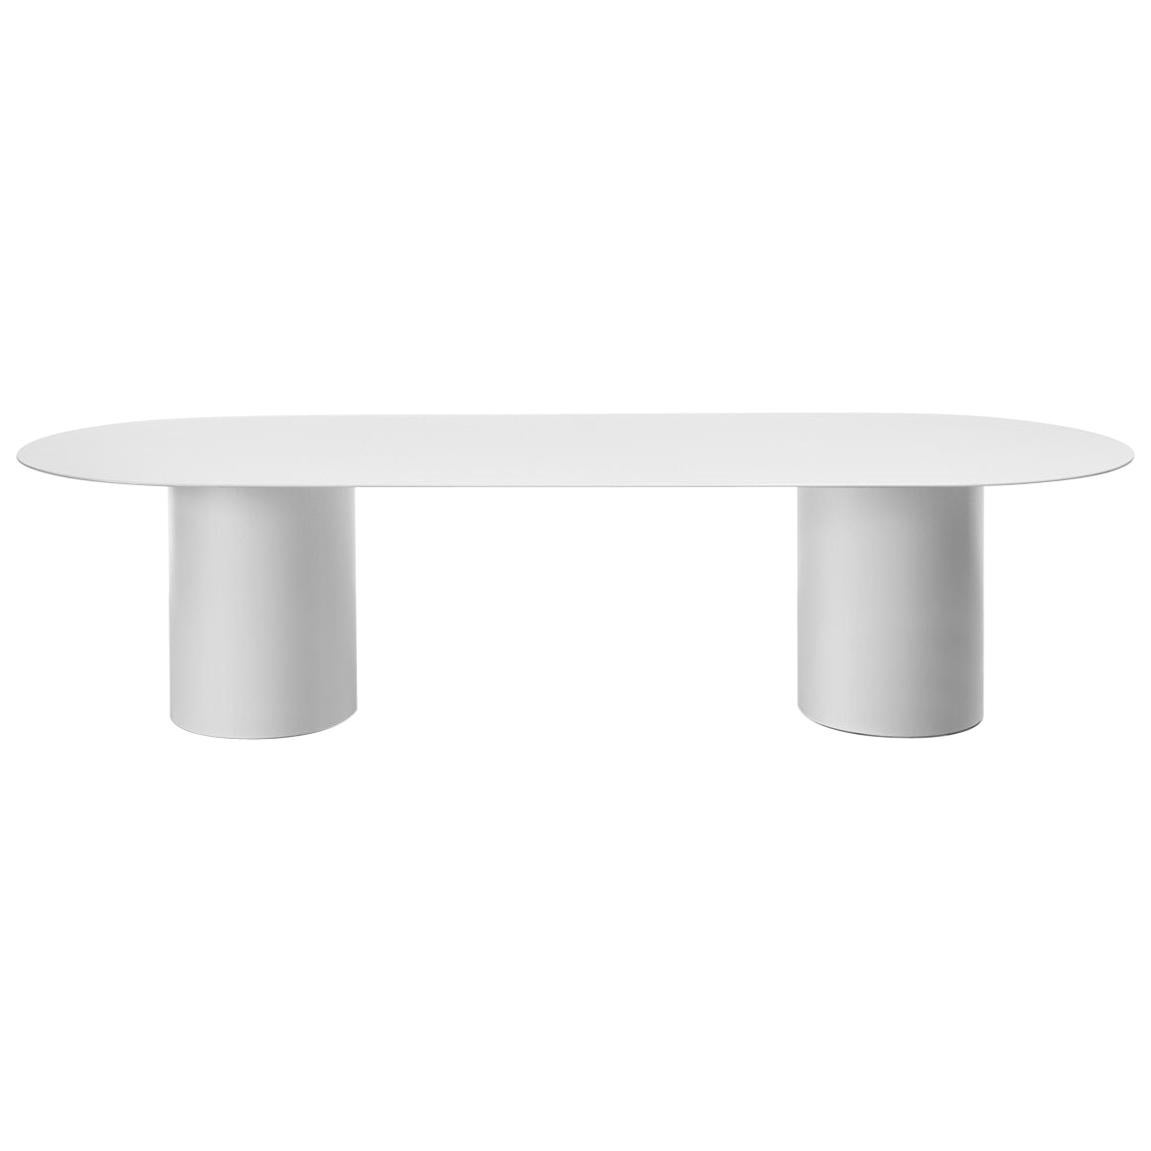 Desalto MM8 White Table Designed by Guglielmo Poletti For Sale